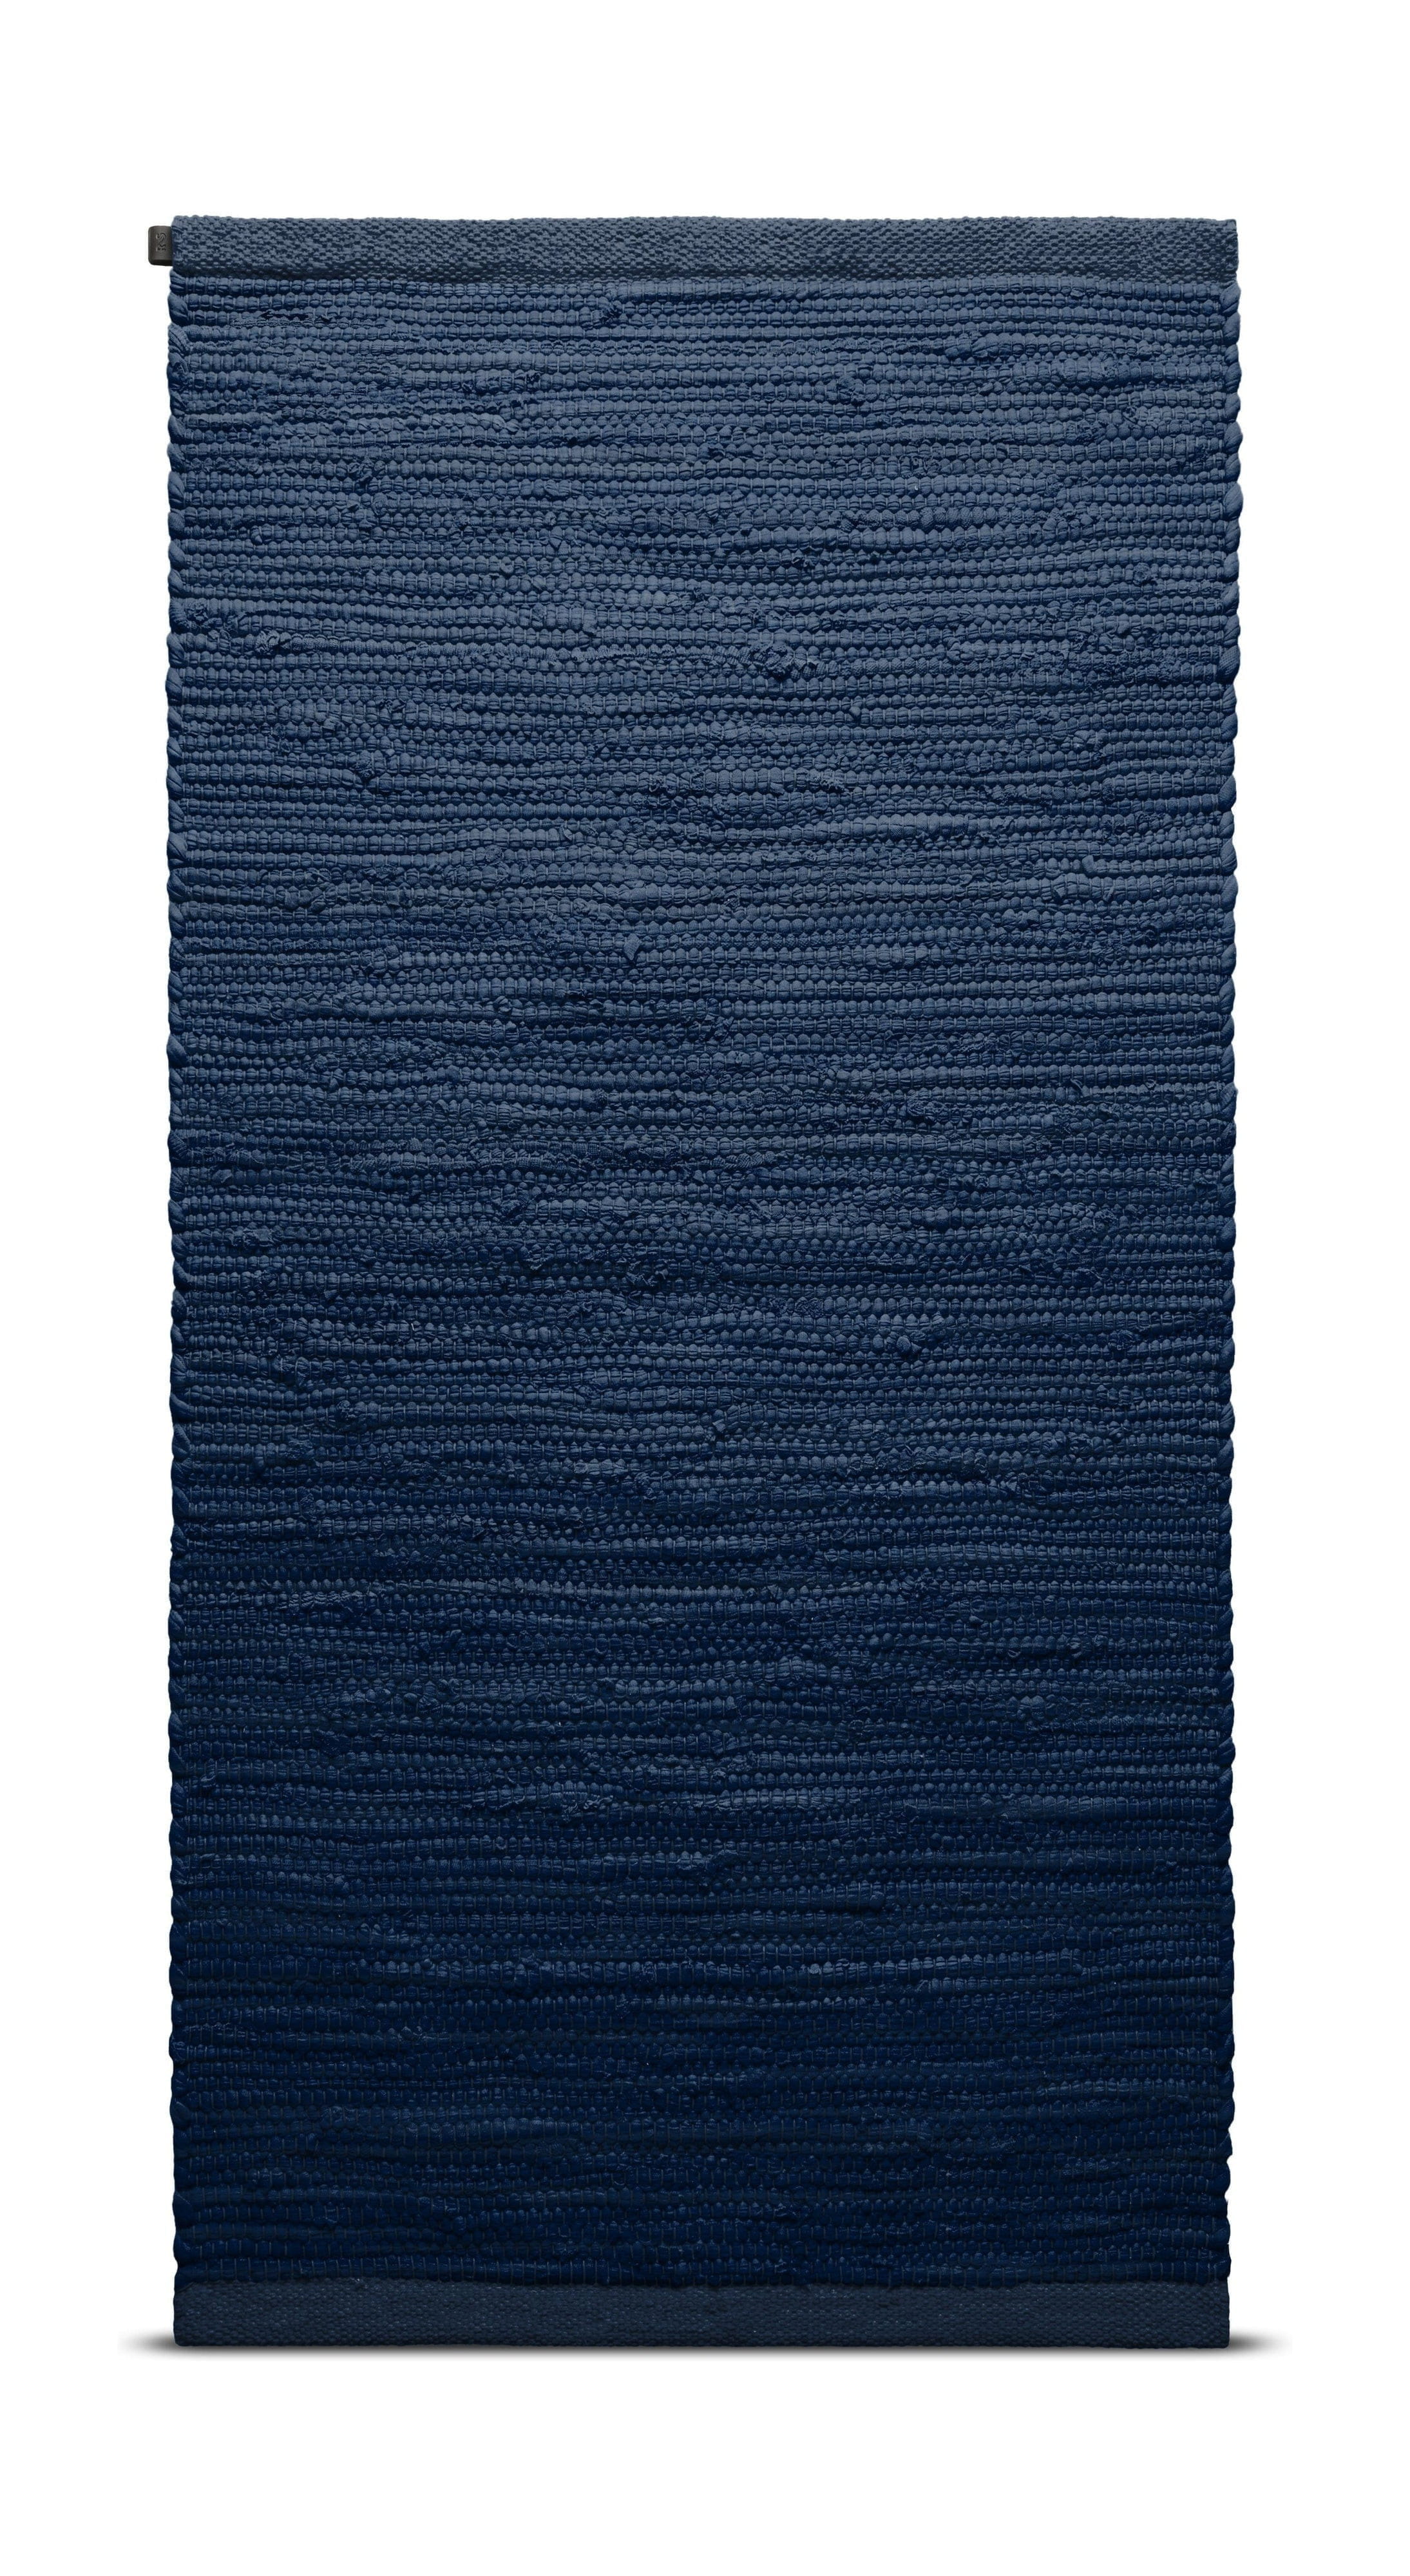 Rug Solid Bomullsmatta 60 x 90 cm, blåbär